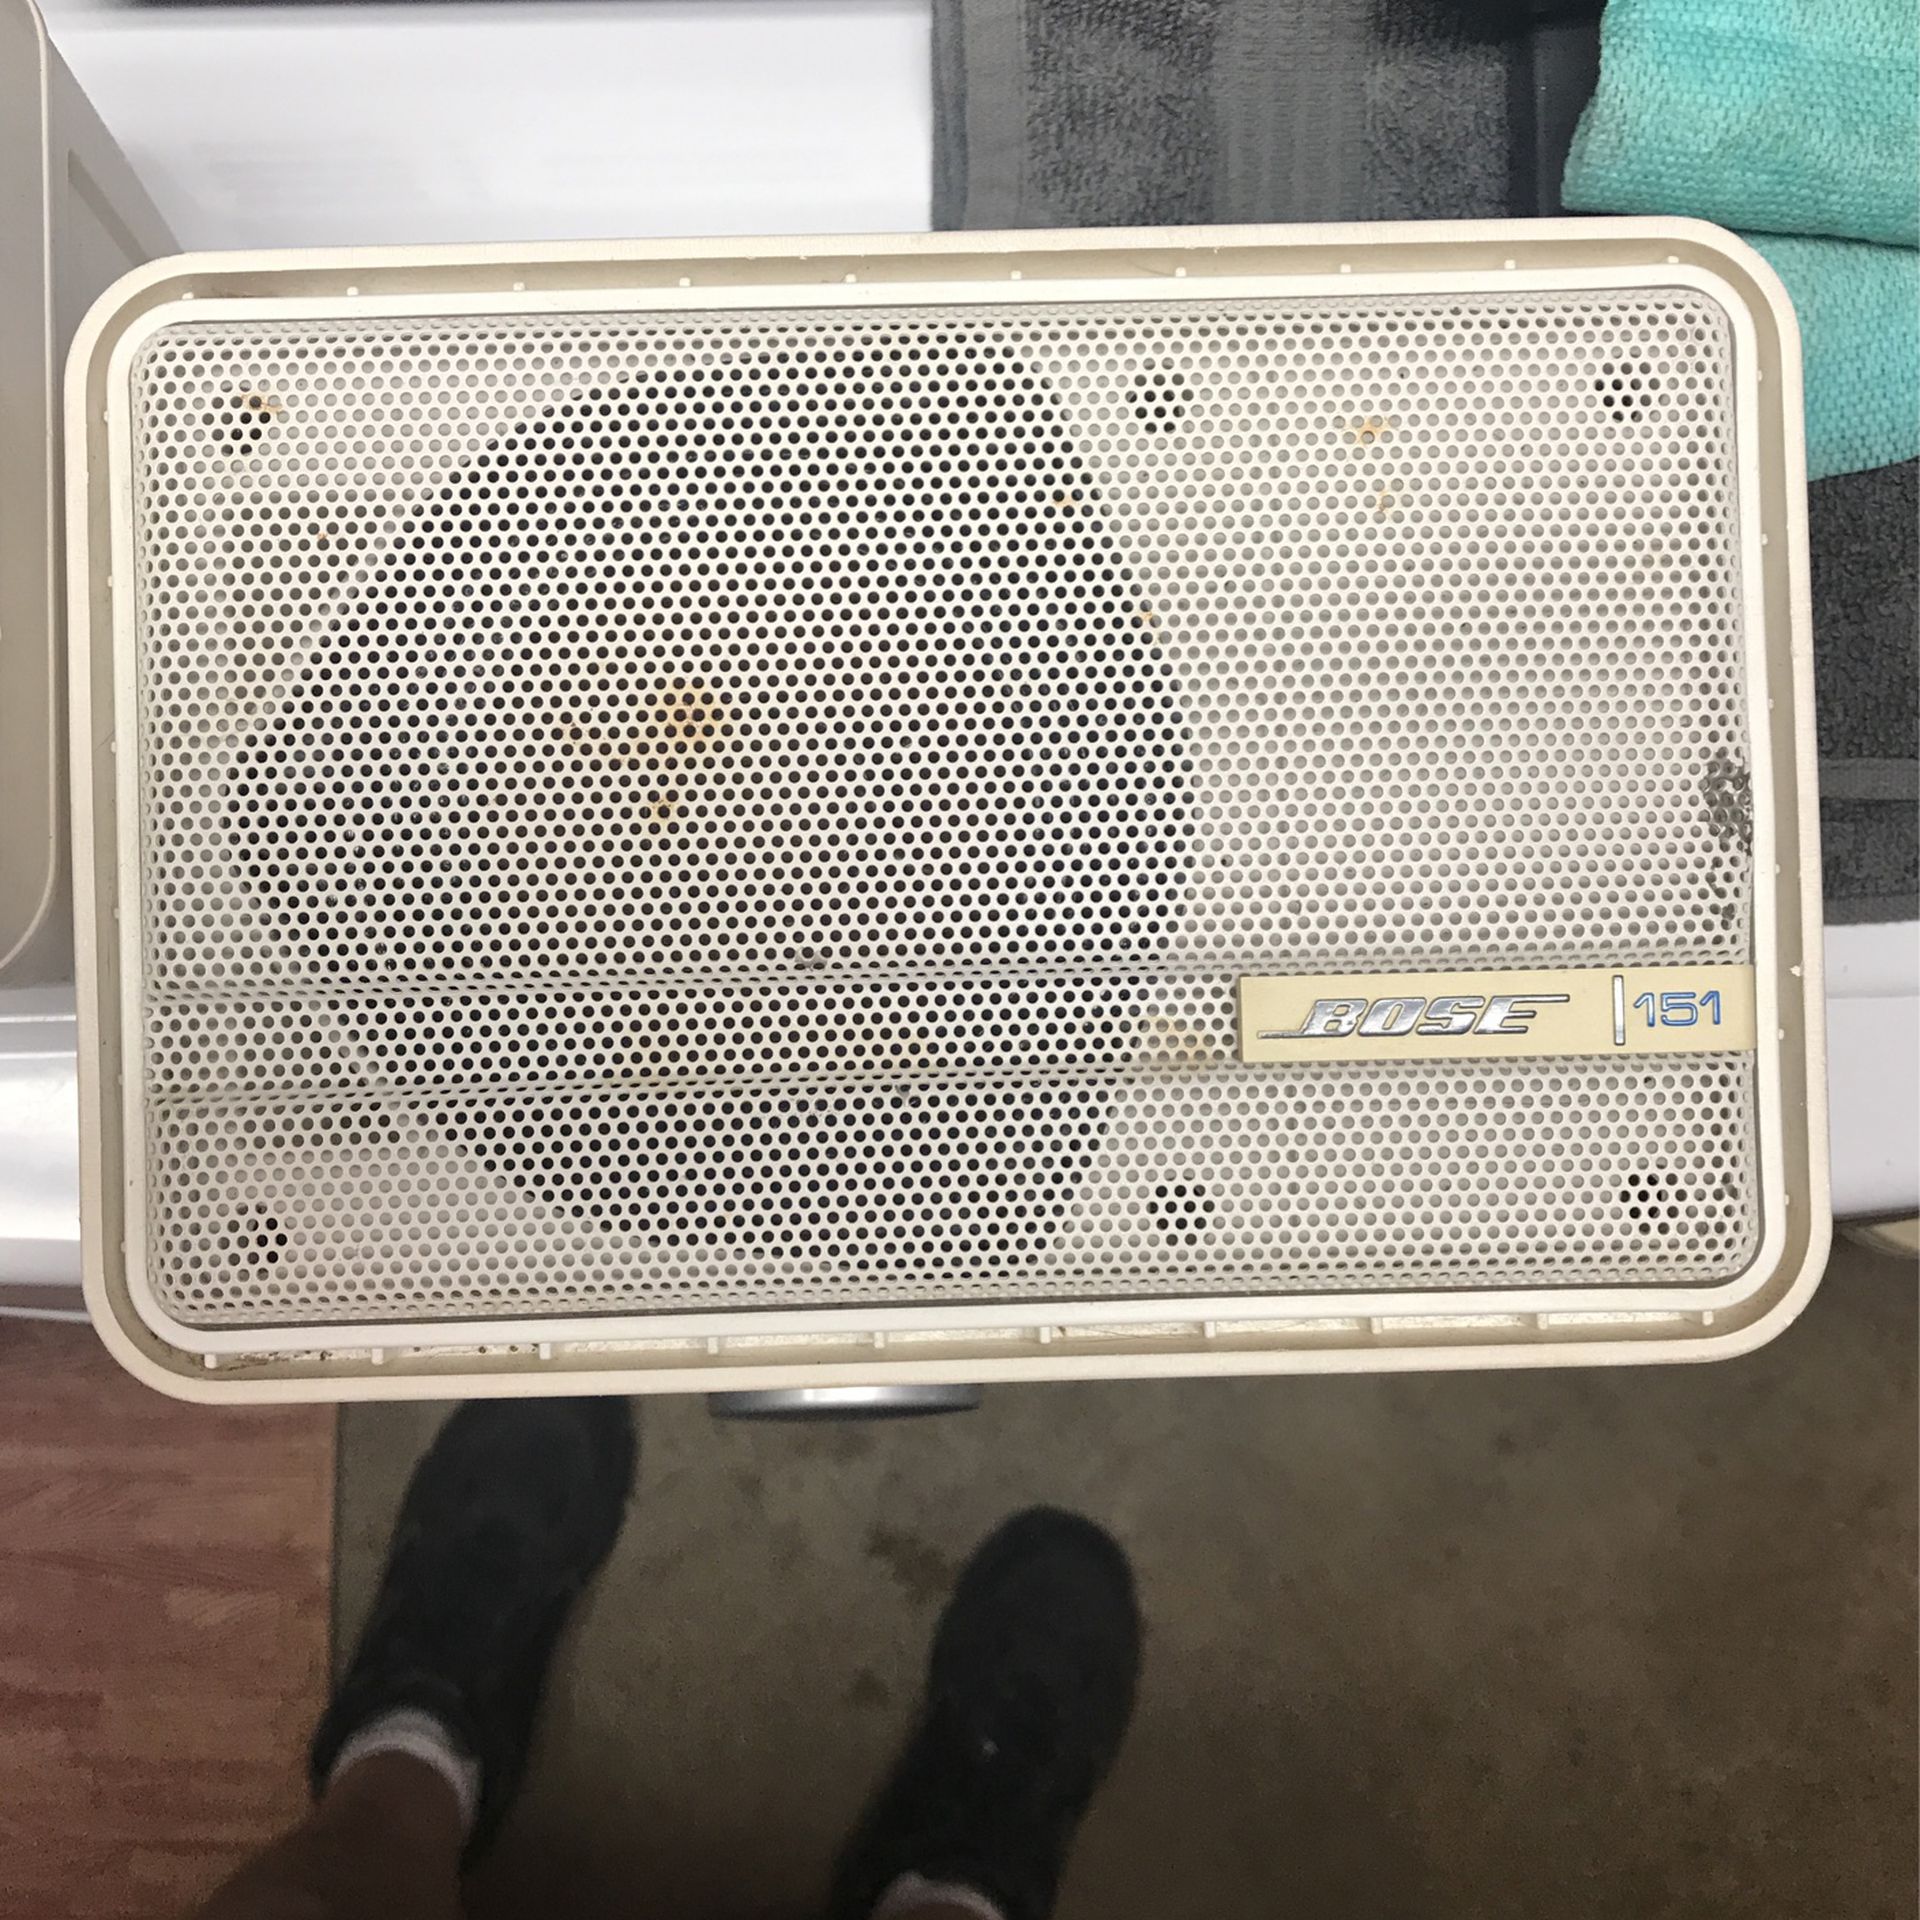 Bose 151 Indoor /outdoor Speakers